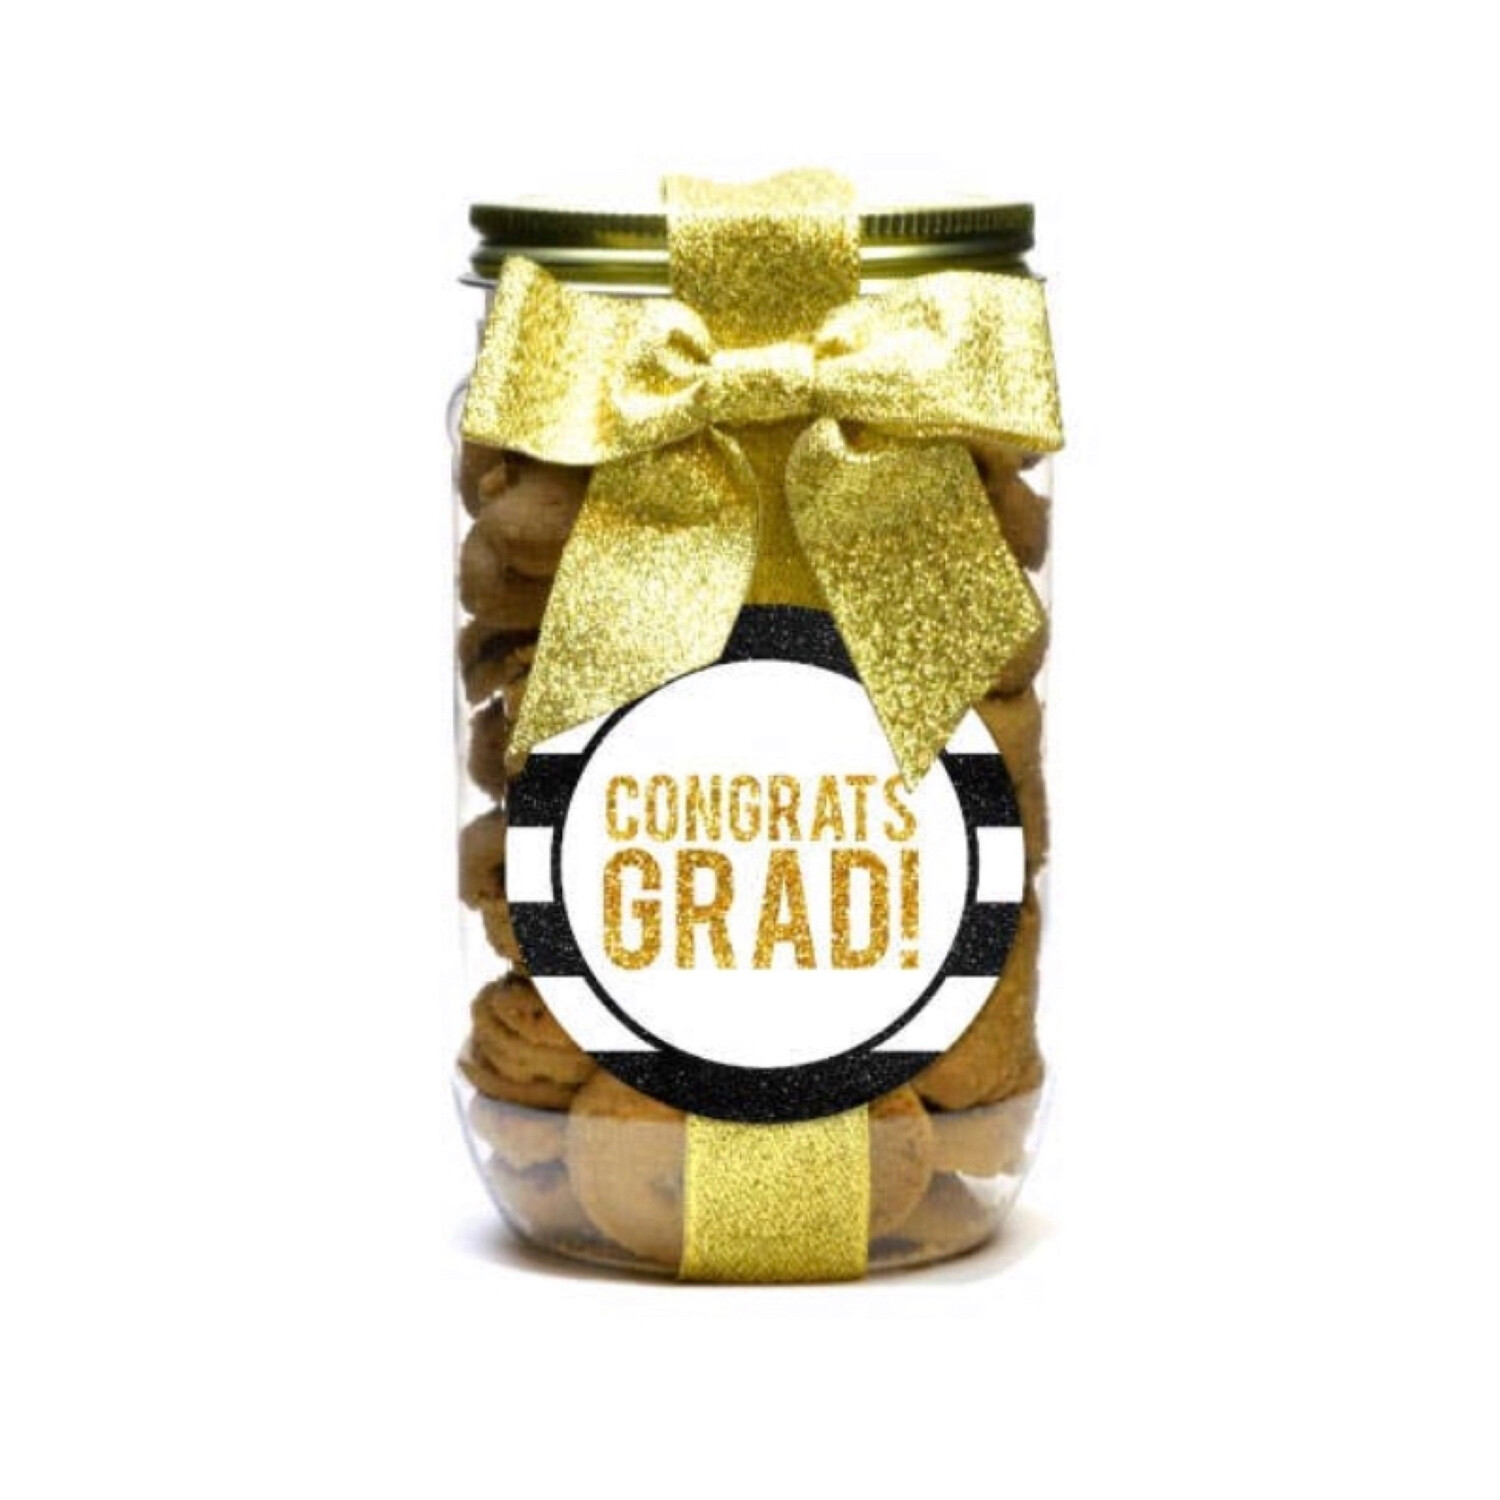 Congrats Grad Cookie Jar